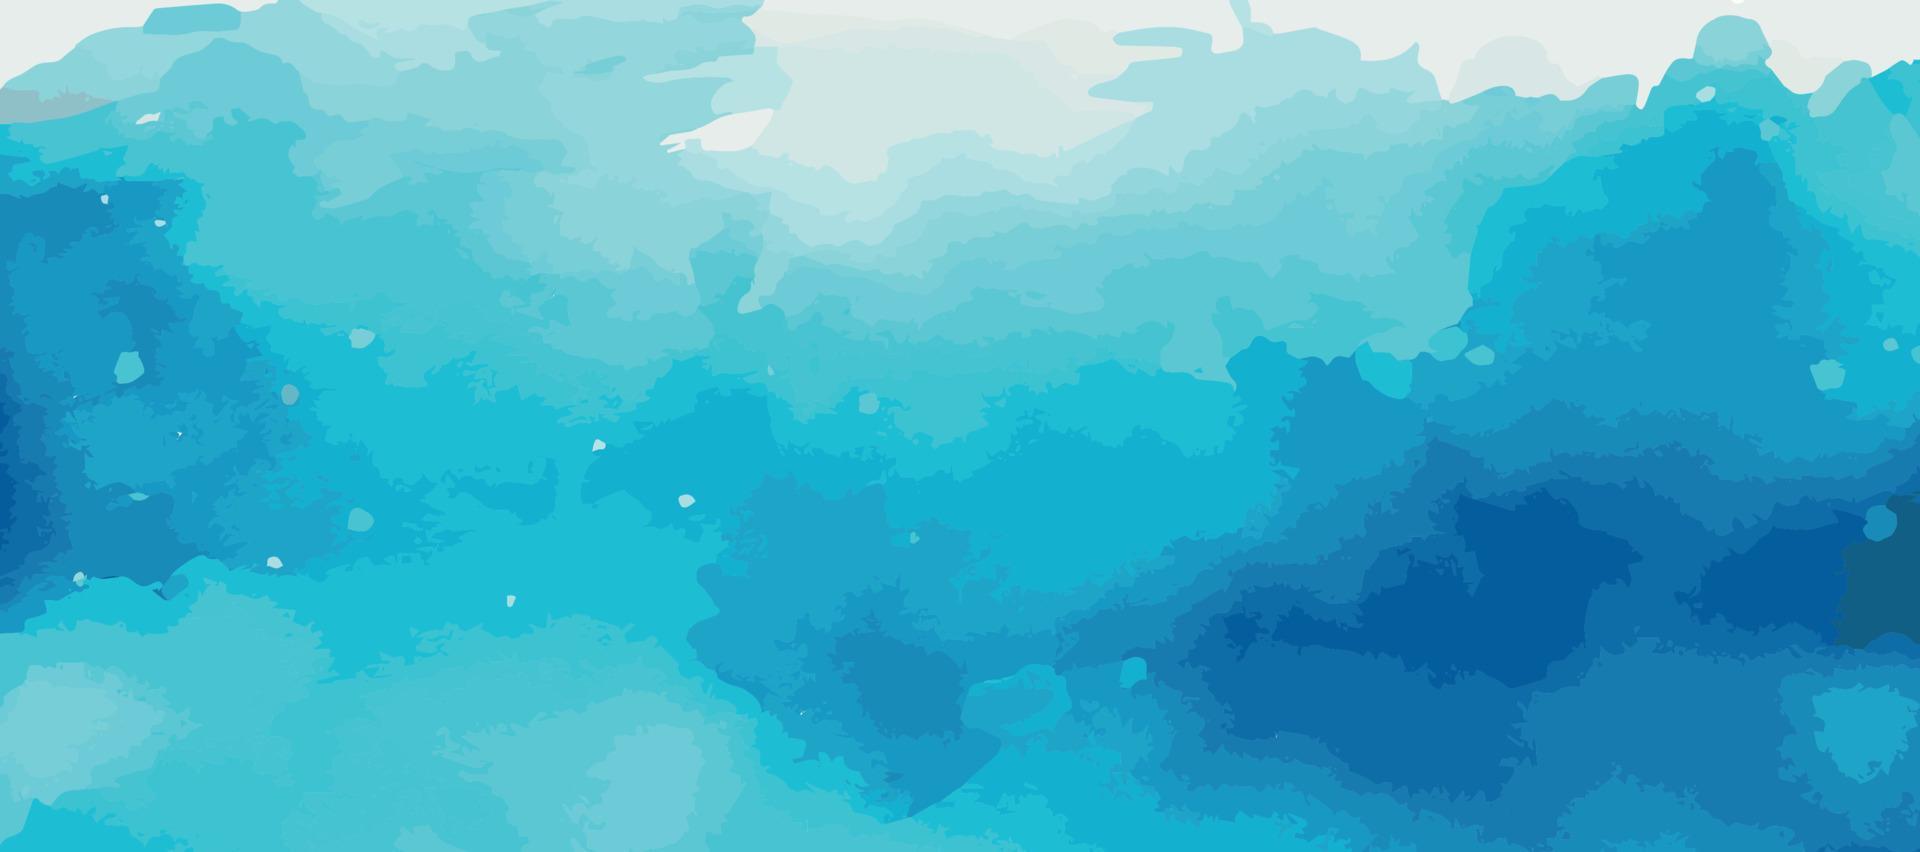 realistisk blå akvarell panorama textur på vit bakgrund - vektor